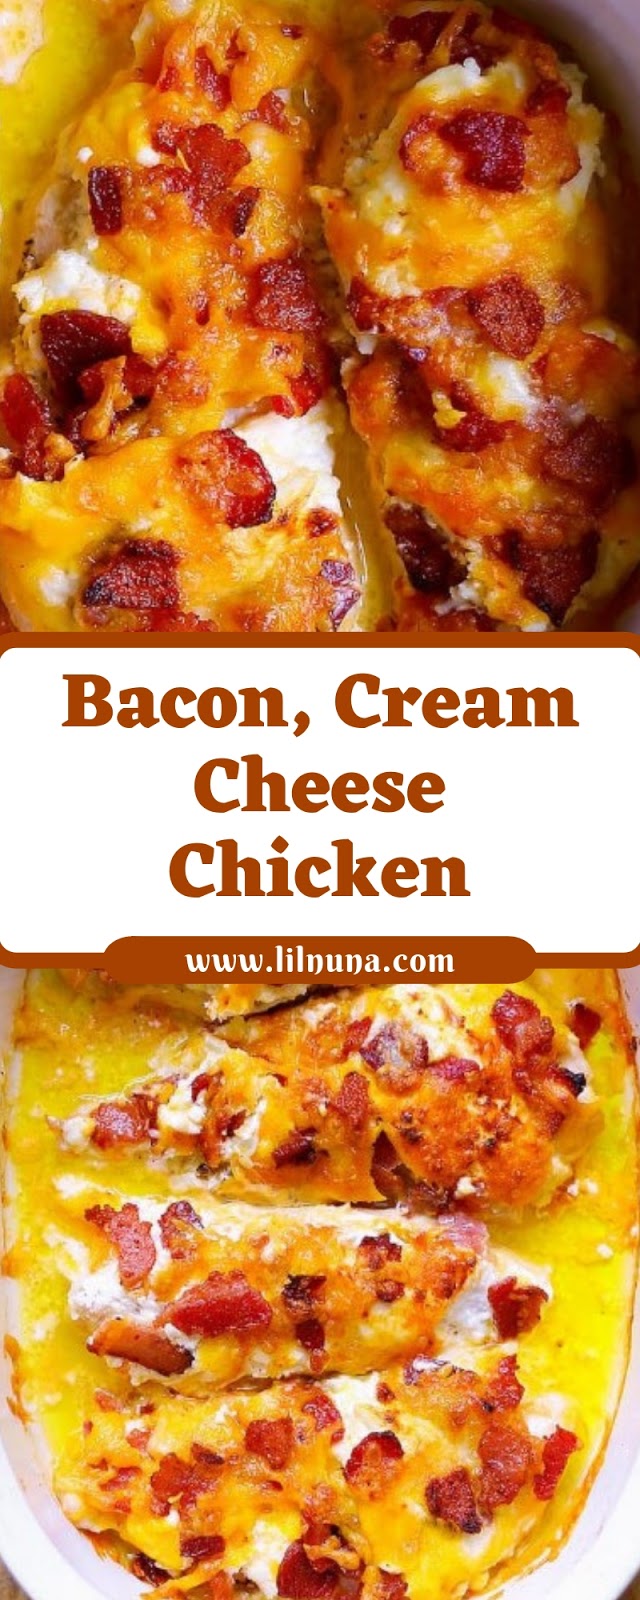 Bacon, Cream Cheese Chicken